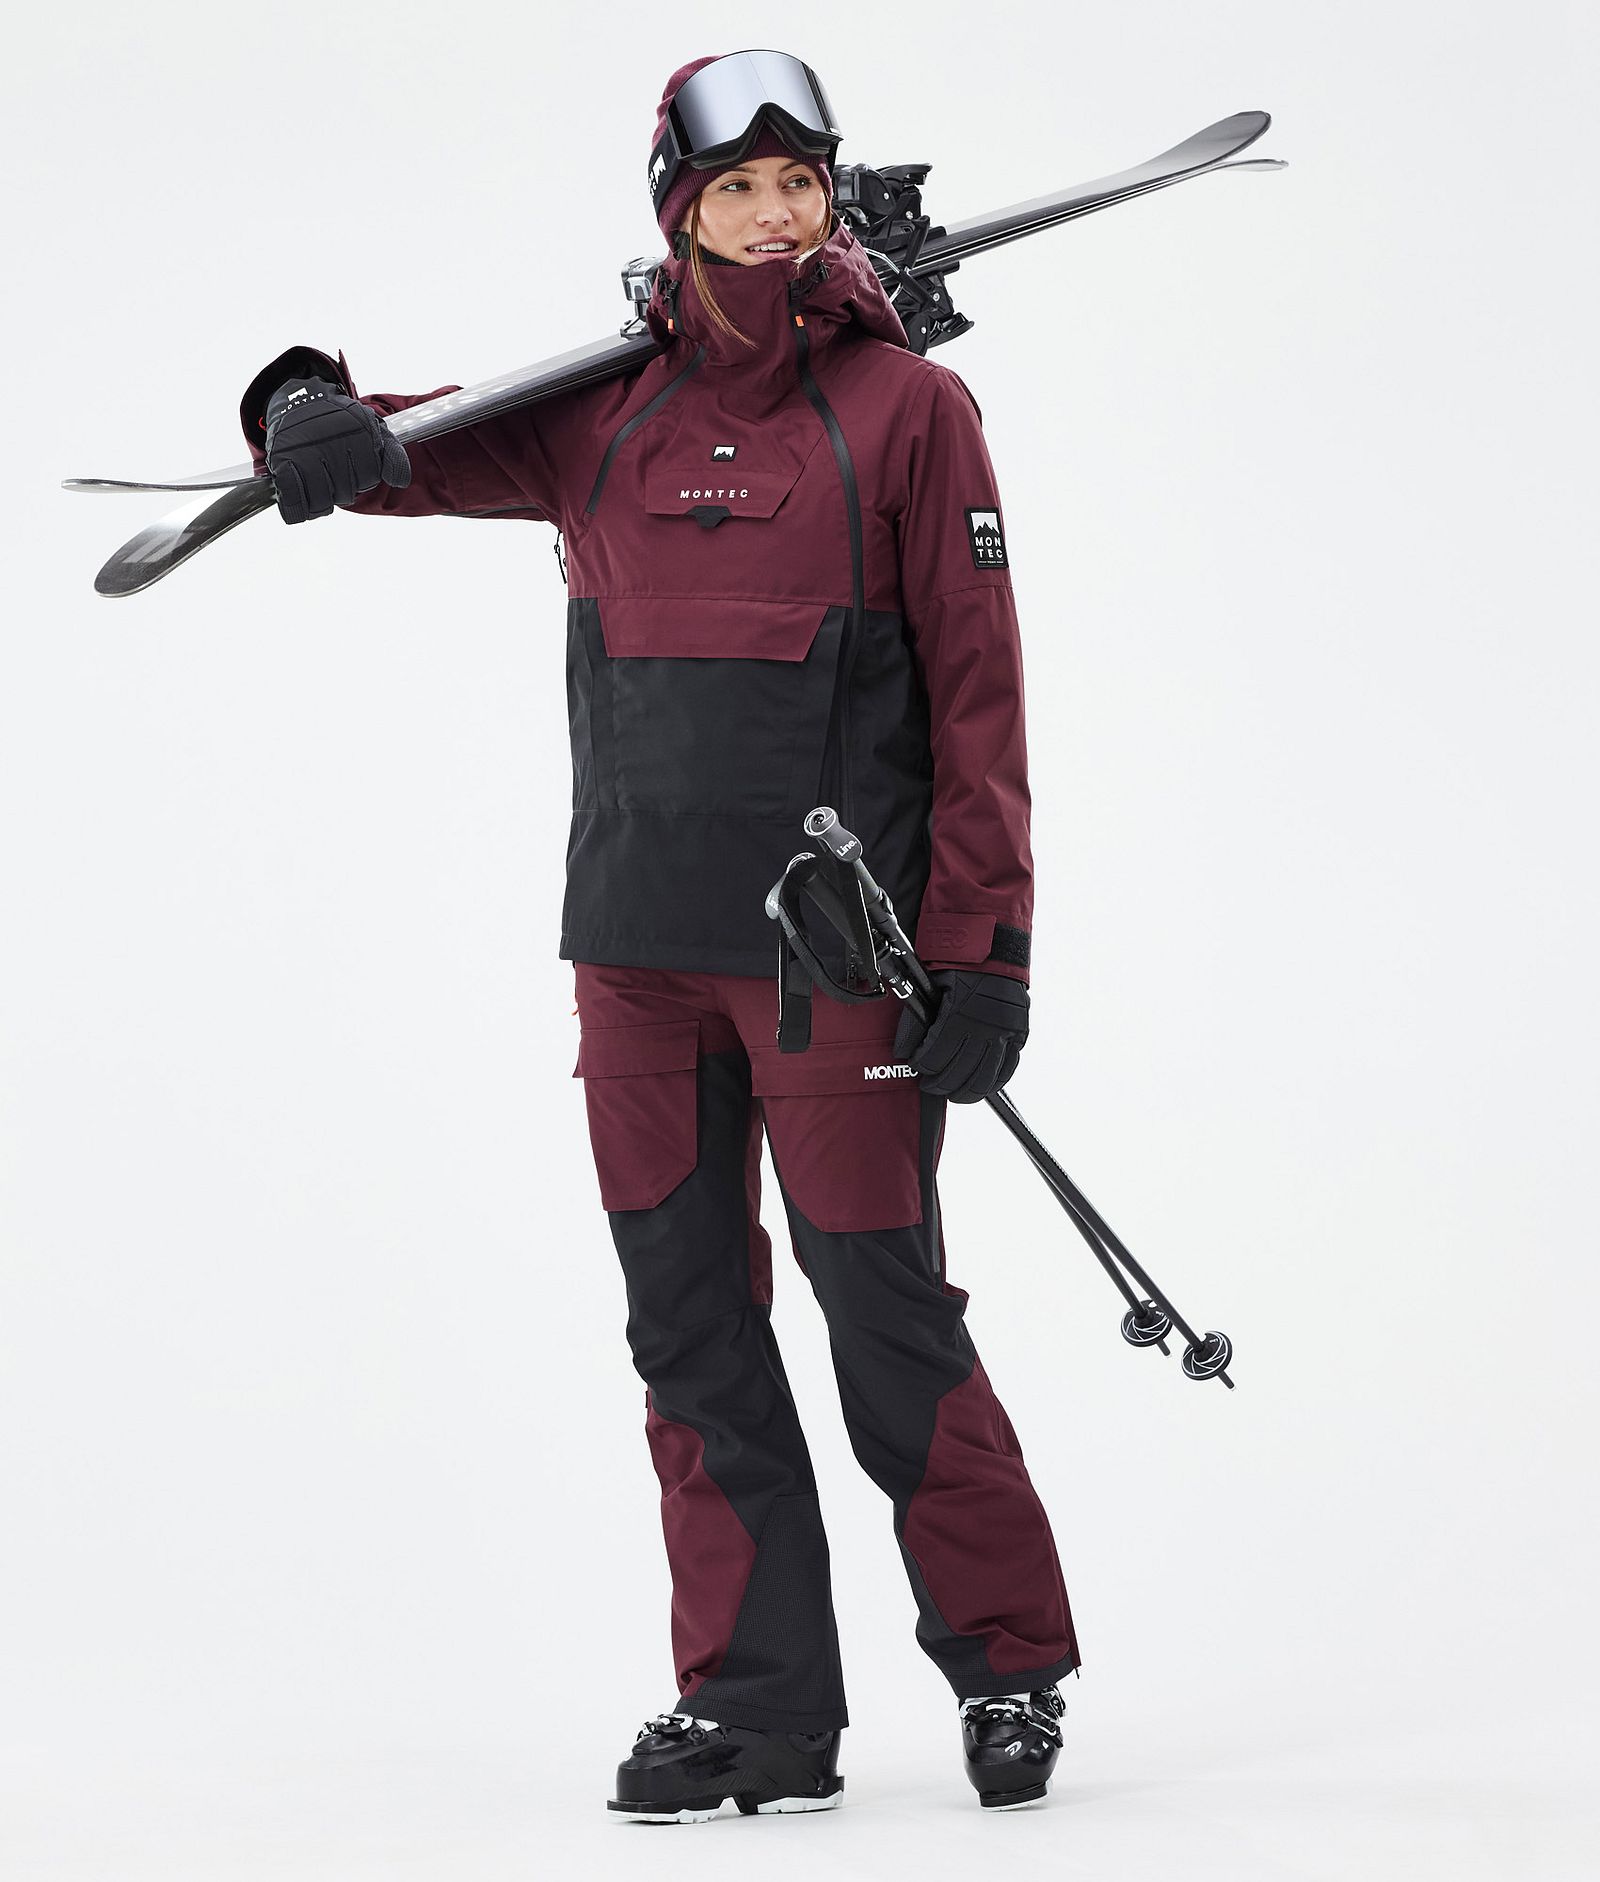 Montec Fawk W Ski Pants Women Burgundy/Black